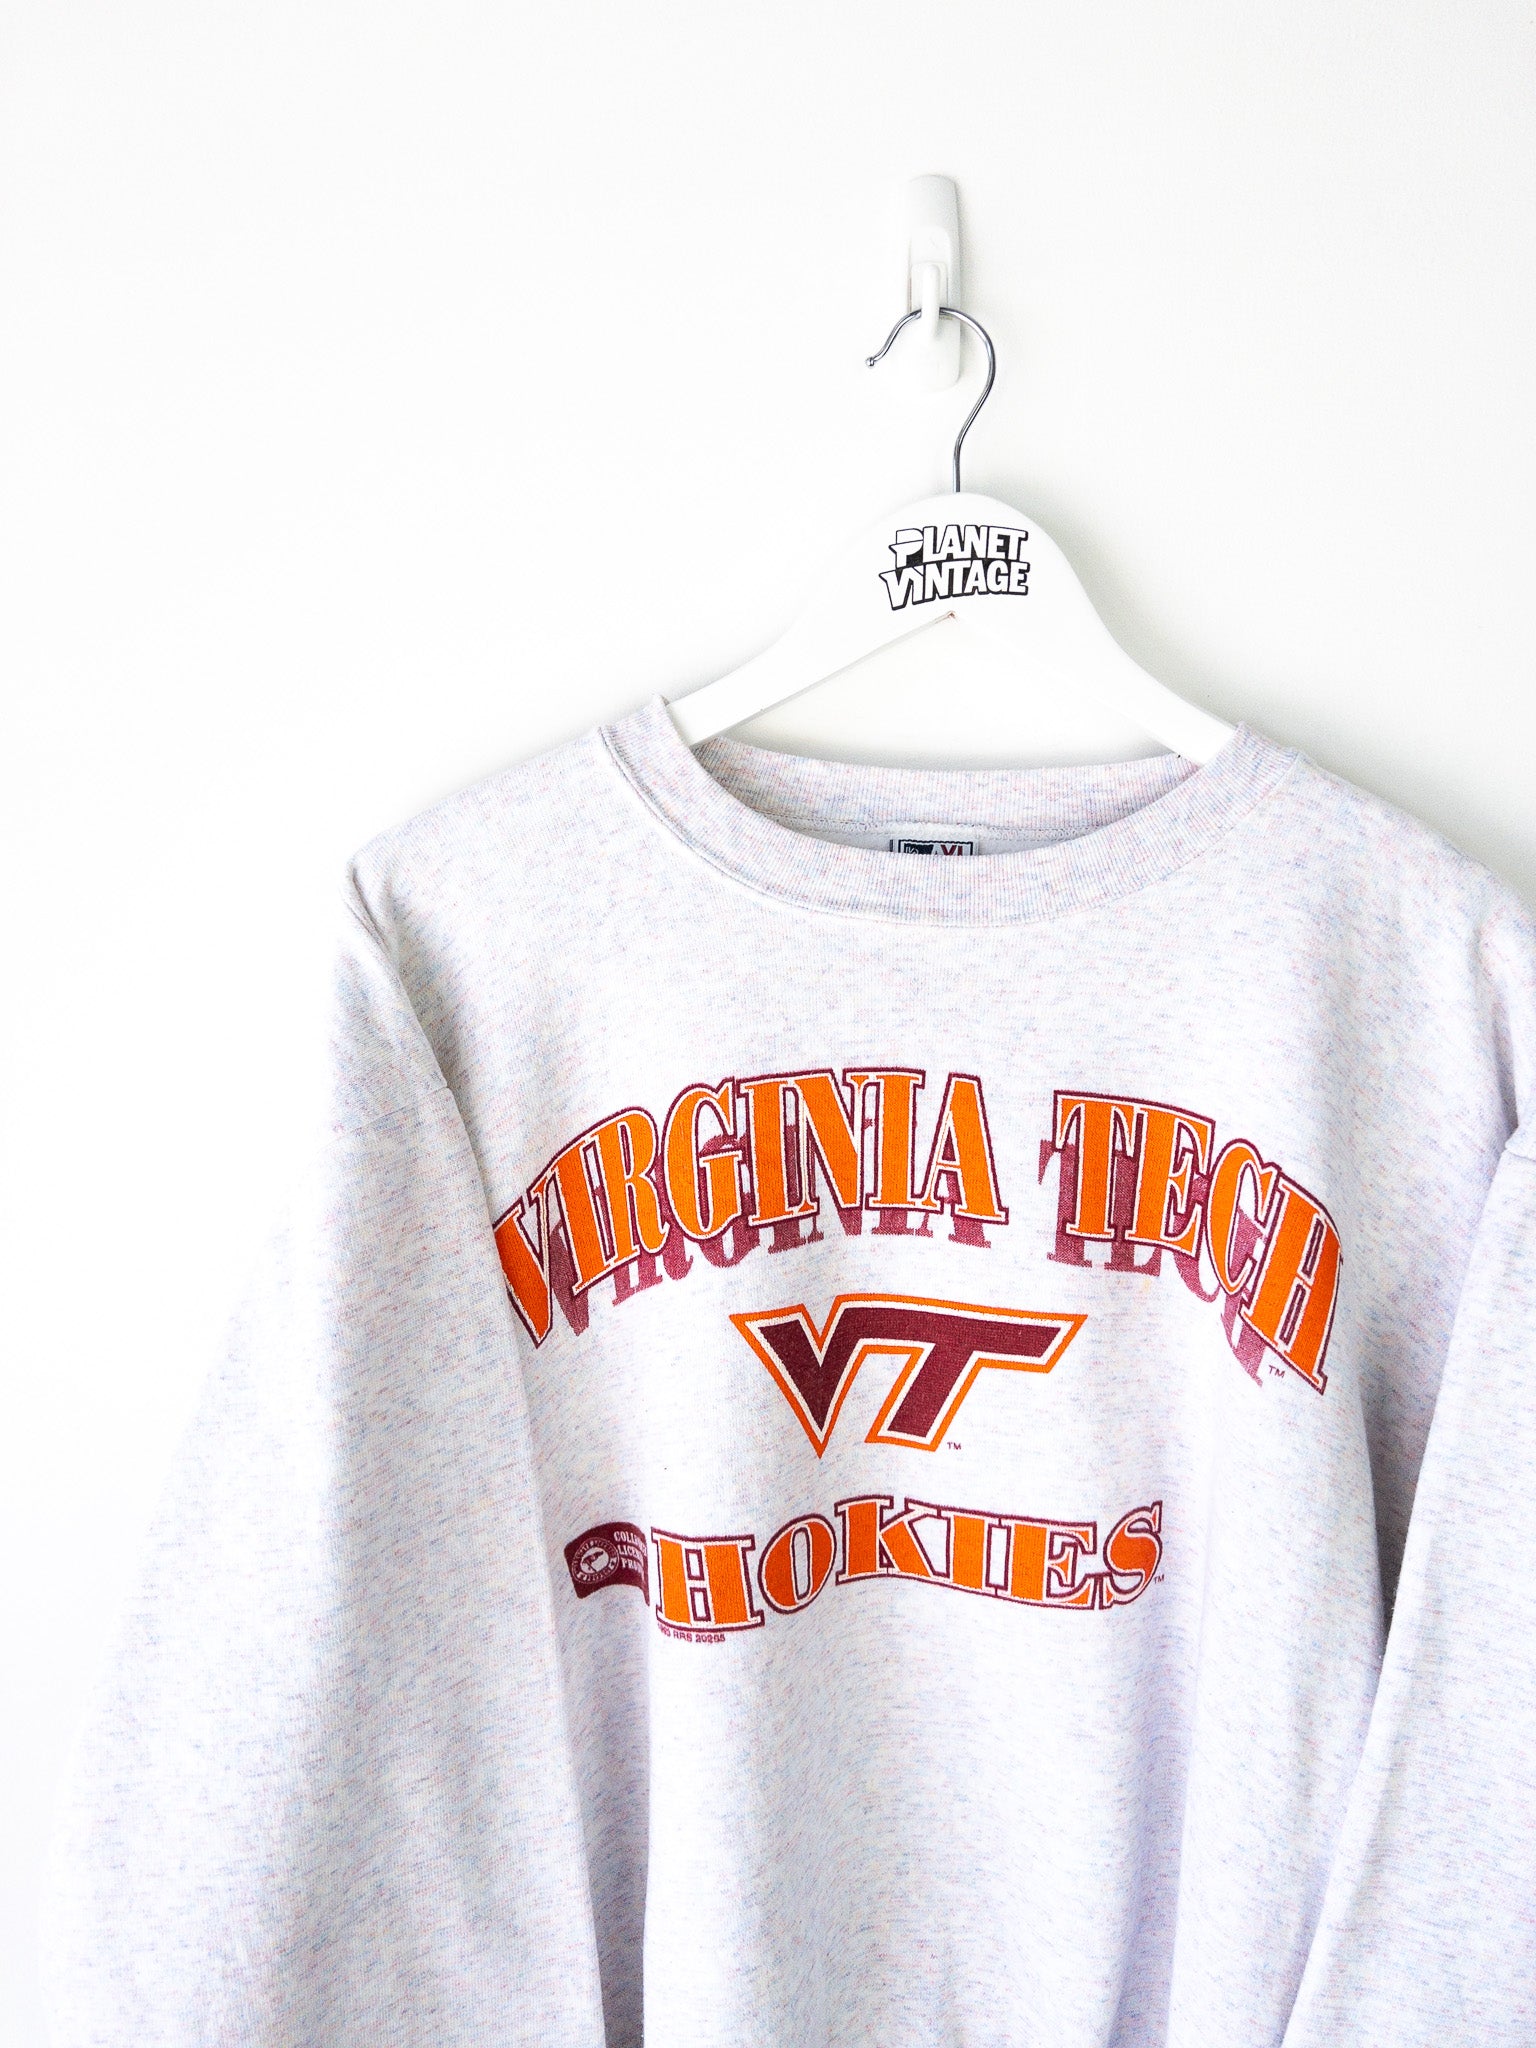 Vintage Virginia Tech Hokies 1993 Sweatshirt (L)